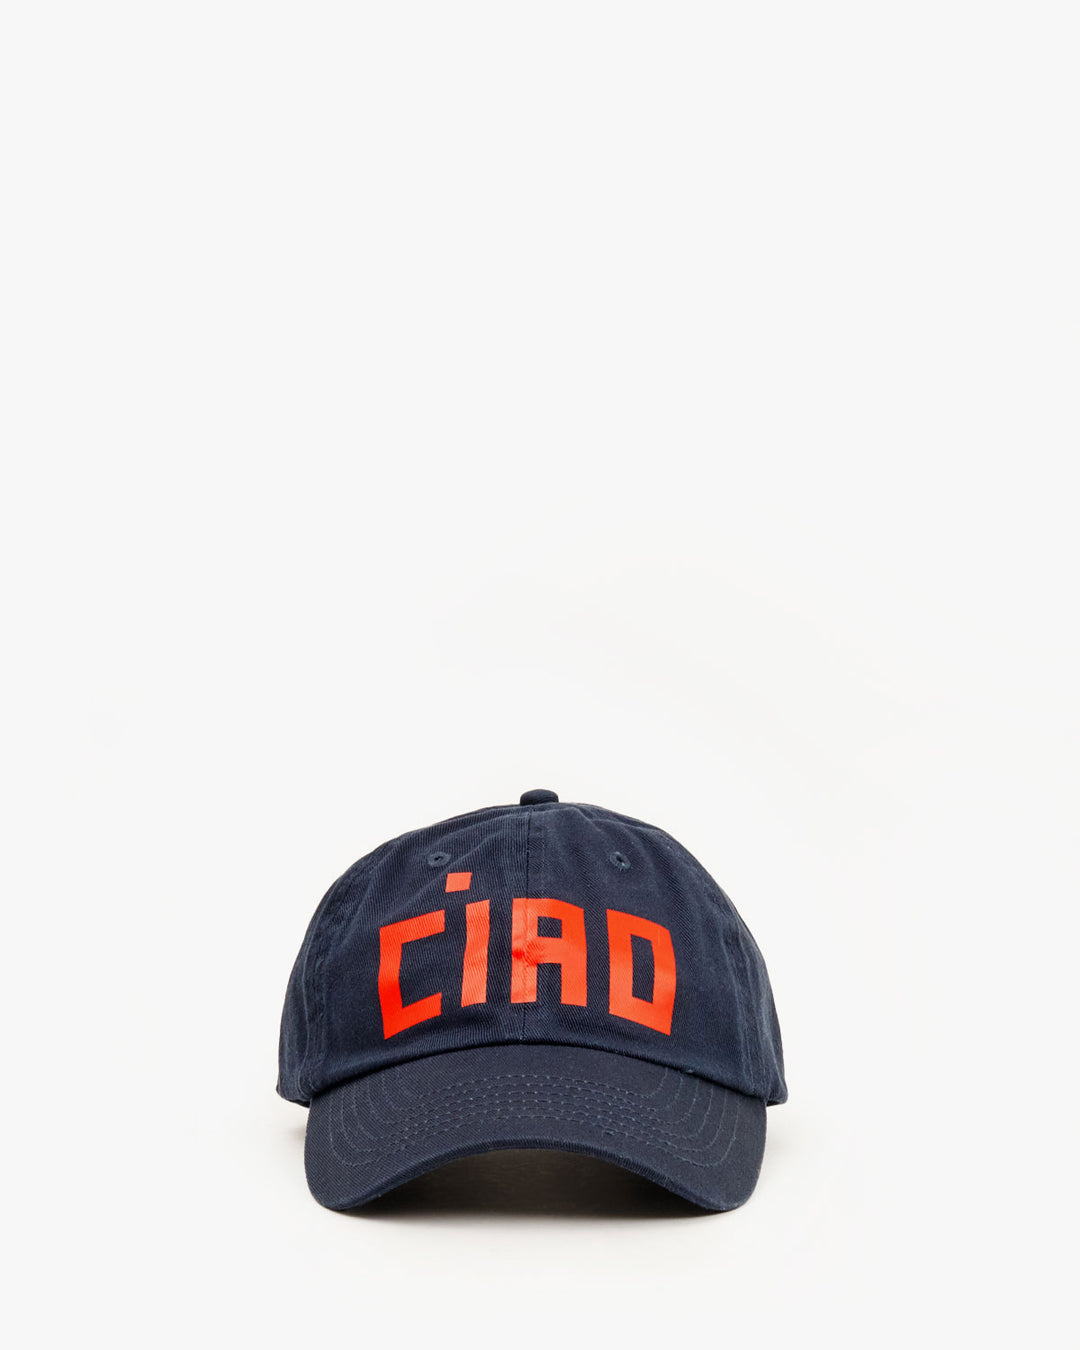 Clare V | CIAO Baseball Cap